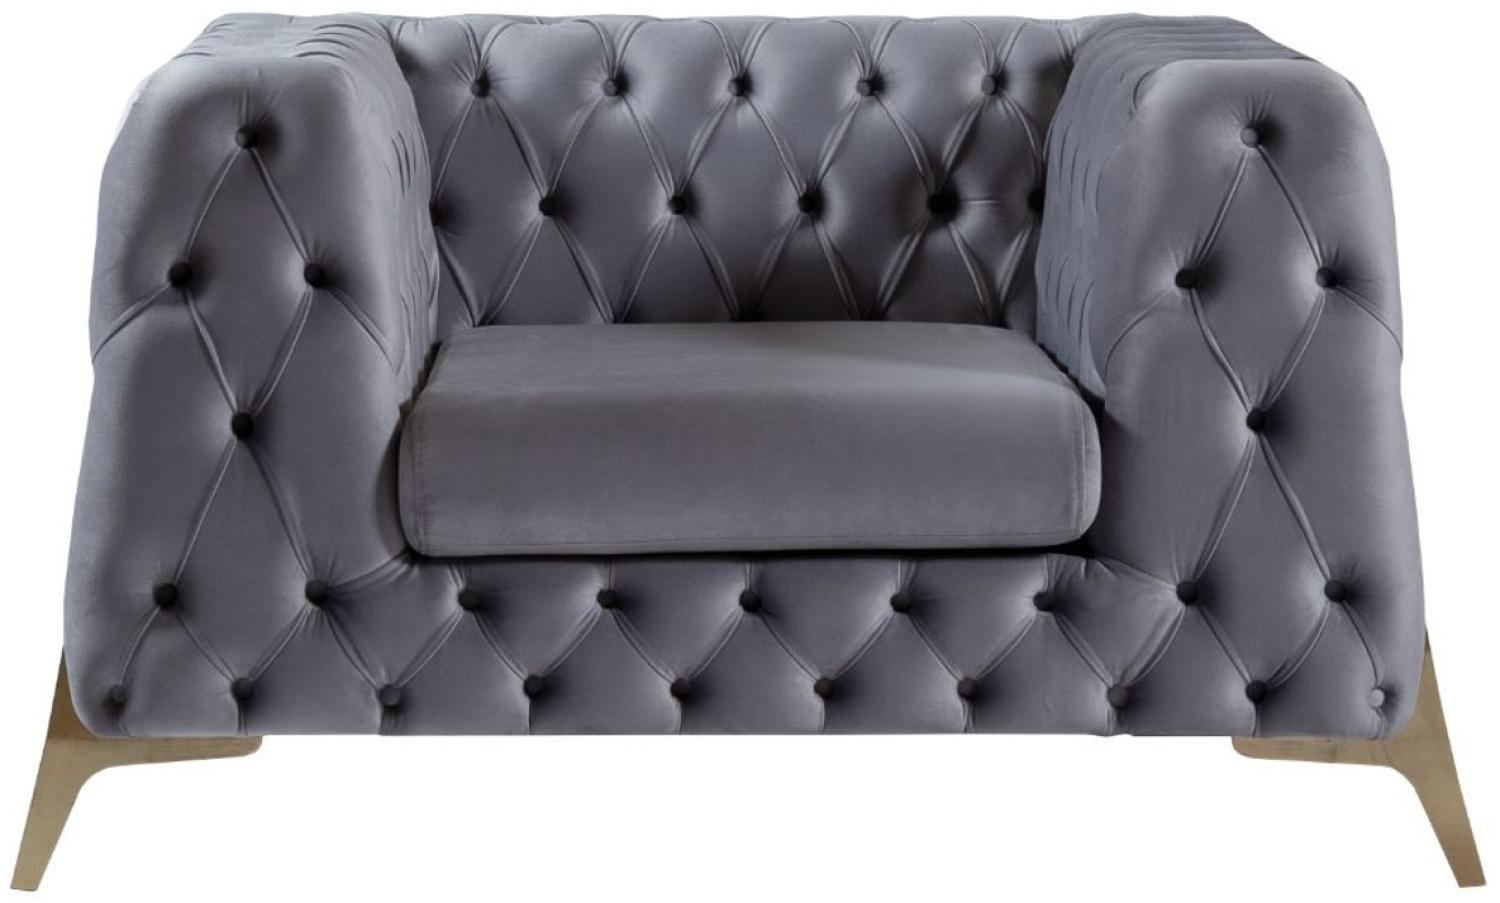 Casa Padrino Luxus Chesterfield Samt Sessel Grau / Messing 125 x 95 x H. 81 cm - Moderner Wohnzimmer Sessel - Chesterfield Möbel Bild 1